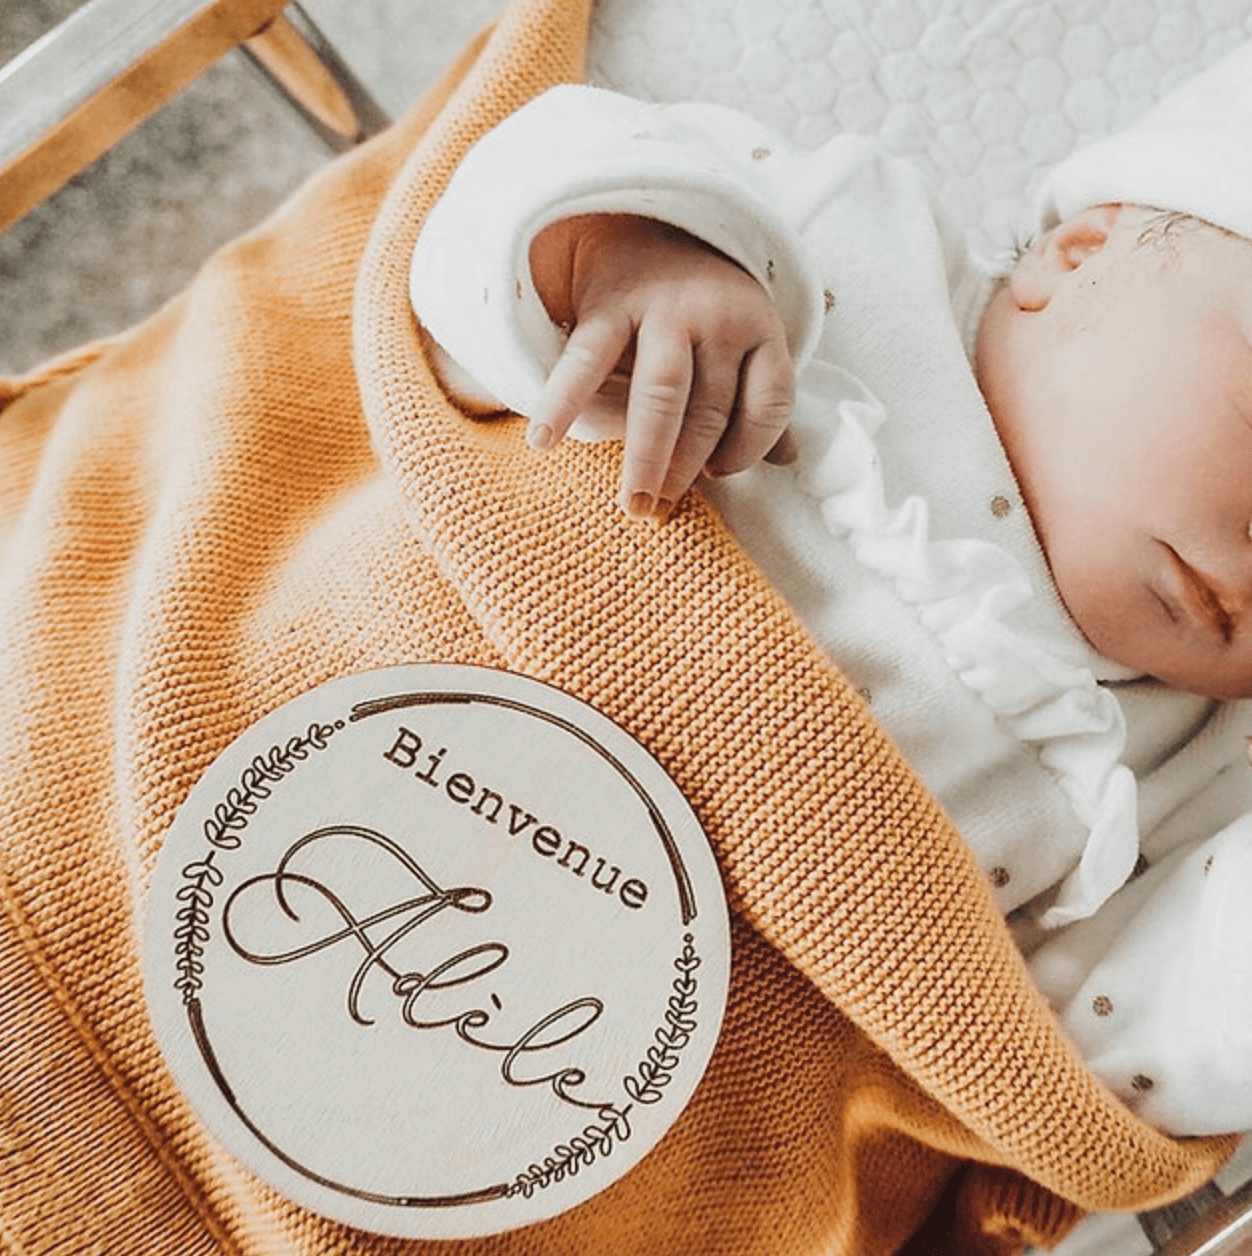 BBASILIYSD Hello World - Panneau d'annonce de naissance en bois -  Accessoires pour bébé - Photographie - Enregistrement de naissance - Cartes  de